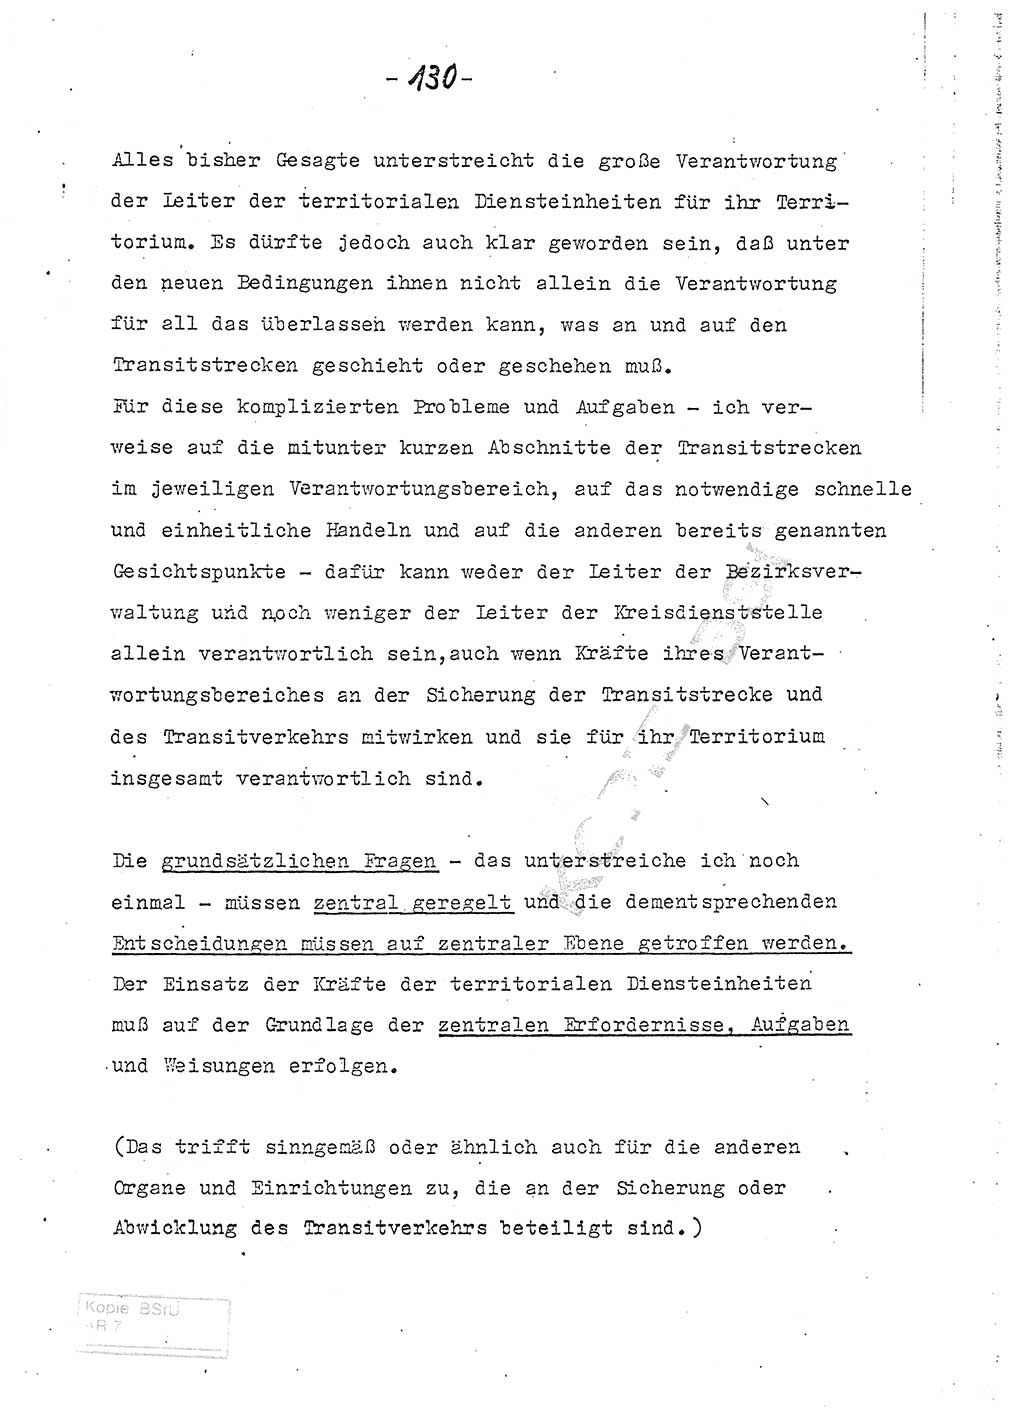 Referat (Entwurf) des Genossen Minister (Generaloberst Erich Mielke) auf der Dienstkonferenz 1972, Ministerium für Staatssicherheit (MfS) [Deutsche Demokratische Republik (DDR)], Der Minister, Geheime Verschlußsache (GVS) 008-150/72, Berlin 25.2.1972, Seite 130 (Ref. Entw. DK MfS DDR Min. GVS 008-150/72 1972, S. 130)